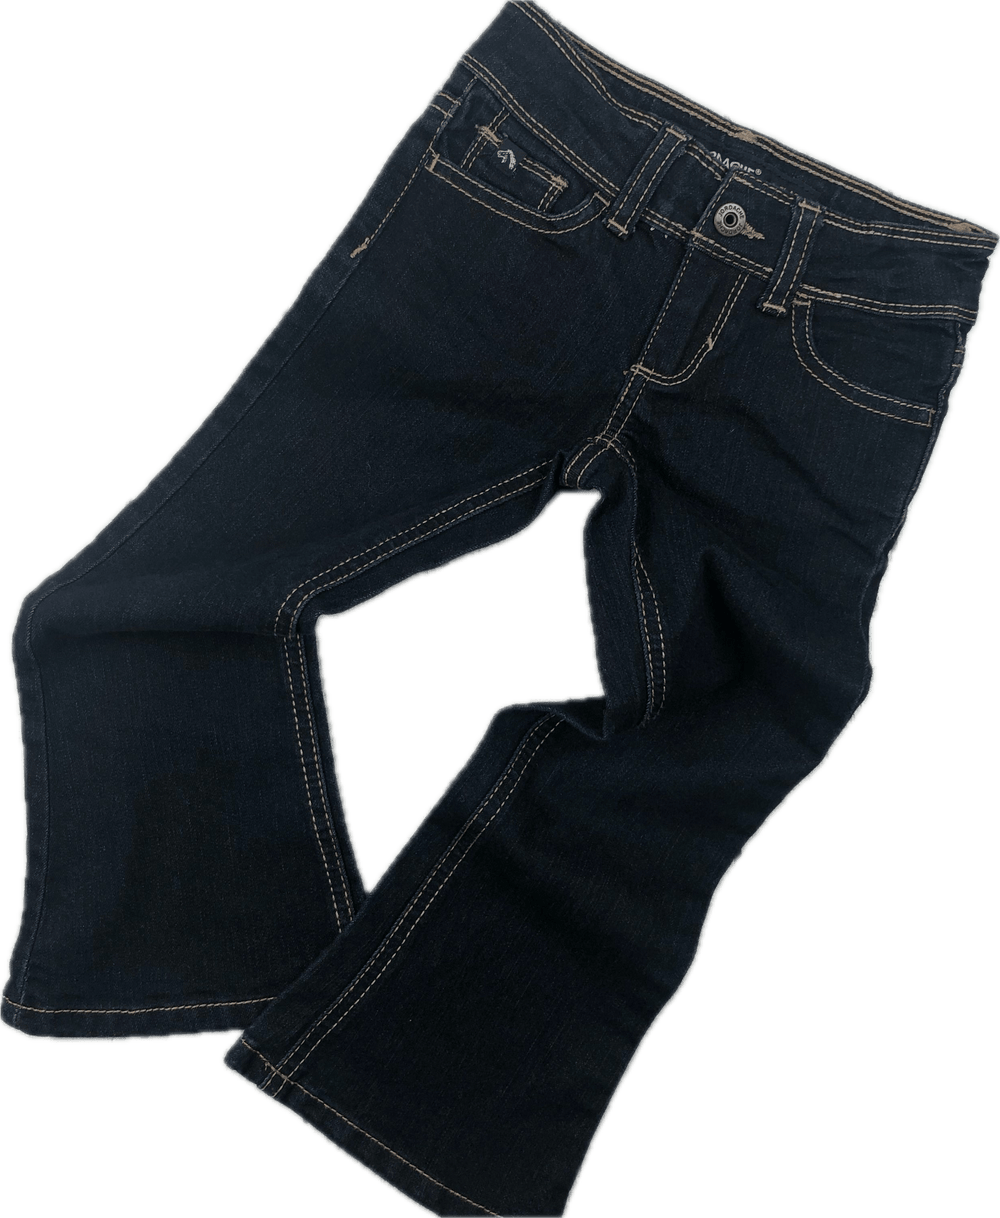 Jordache Girls 'Flare' Jeans - Size 4 - Jean Pool